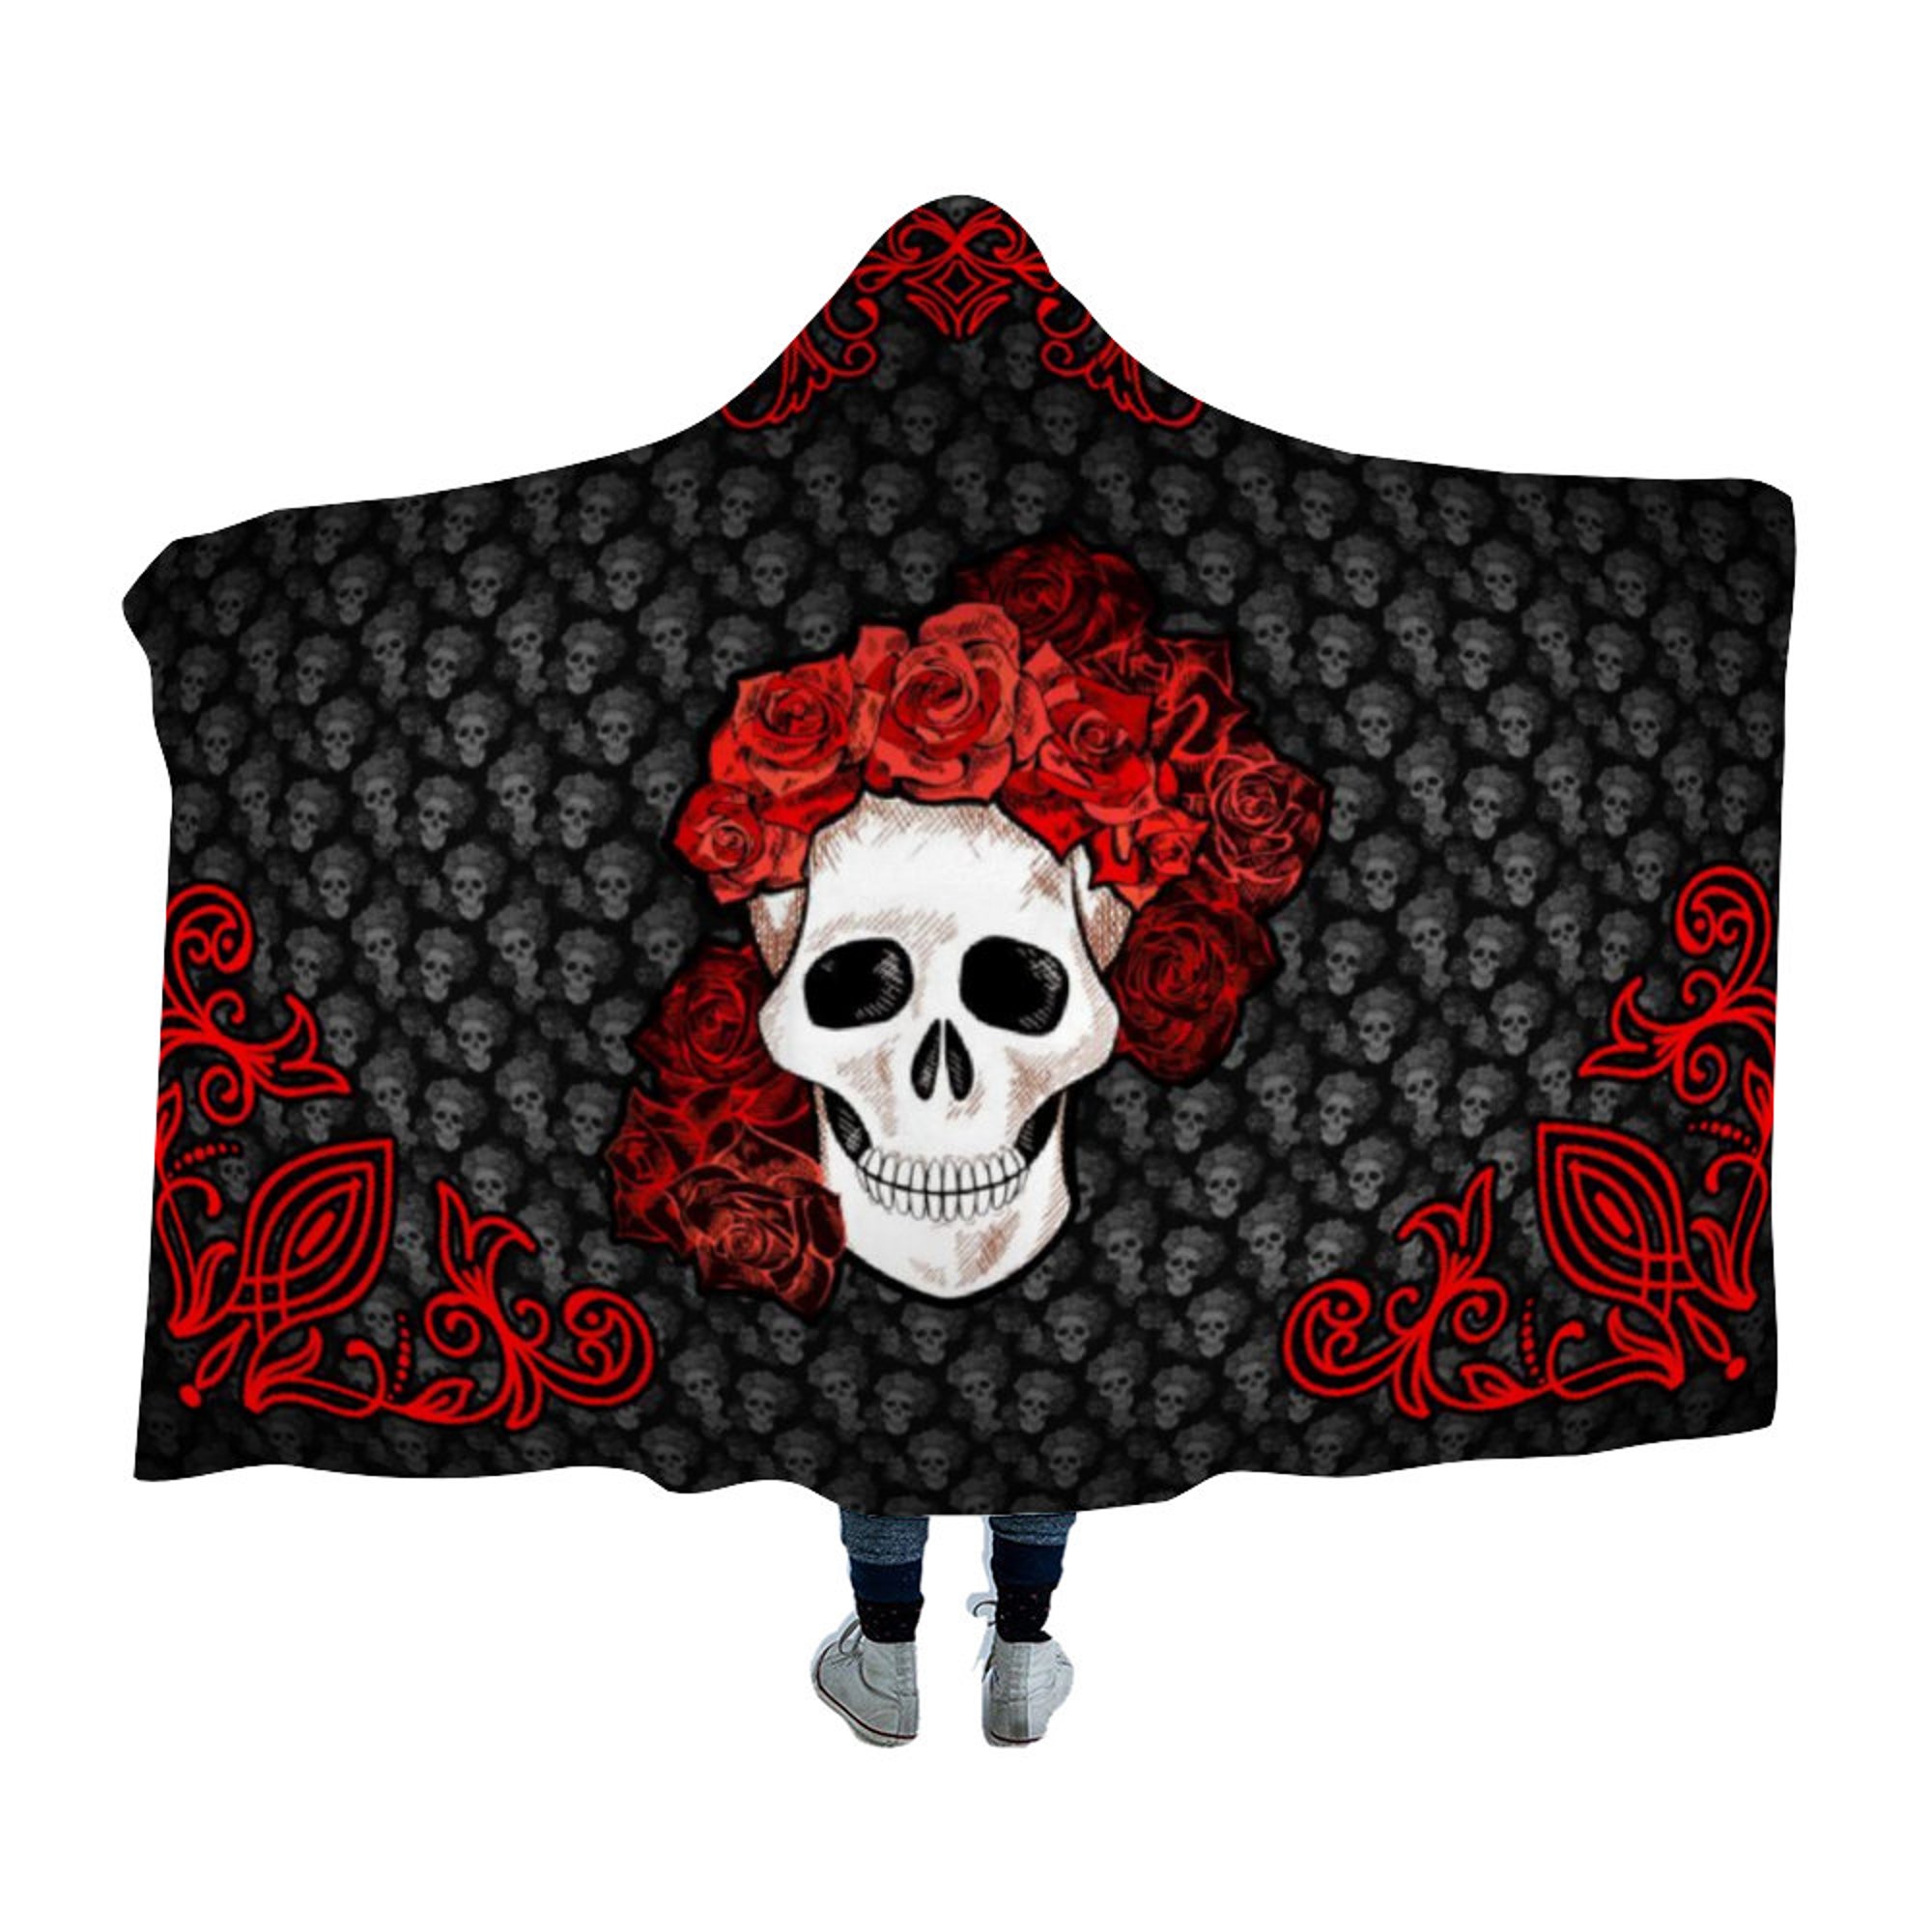 Skull Hooded Blanket - Floral Skull Blanket